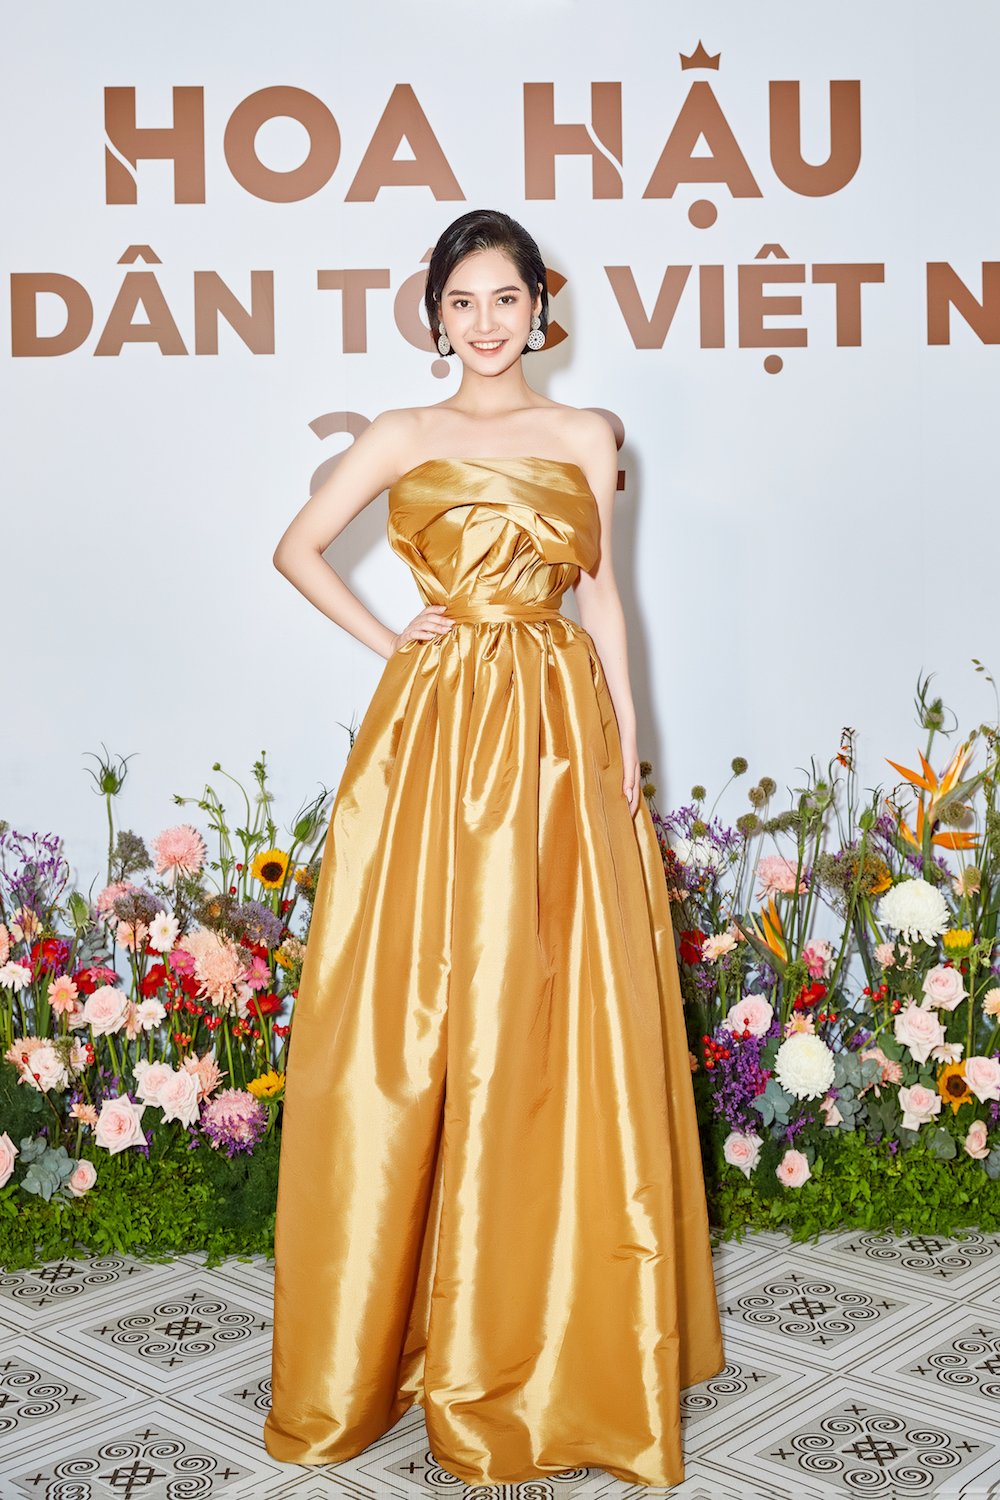 Hoa hau cac dan toc Viet Nam Nong Thi Thuy Hang - Profile ấn tượng của top 30 thí sinh vòng Chung khảo phía Nam – Hoa hậu các Dân tộc Việt Nam